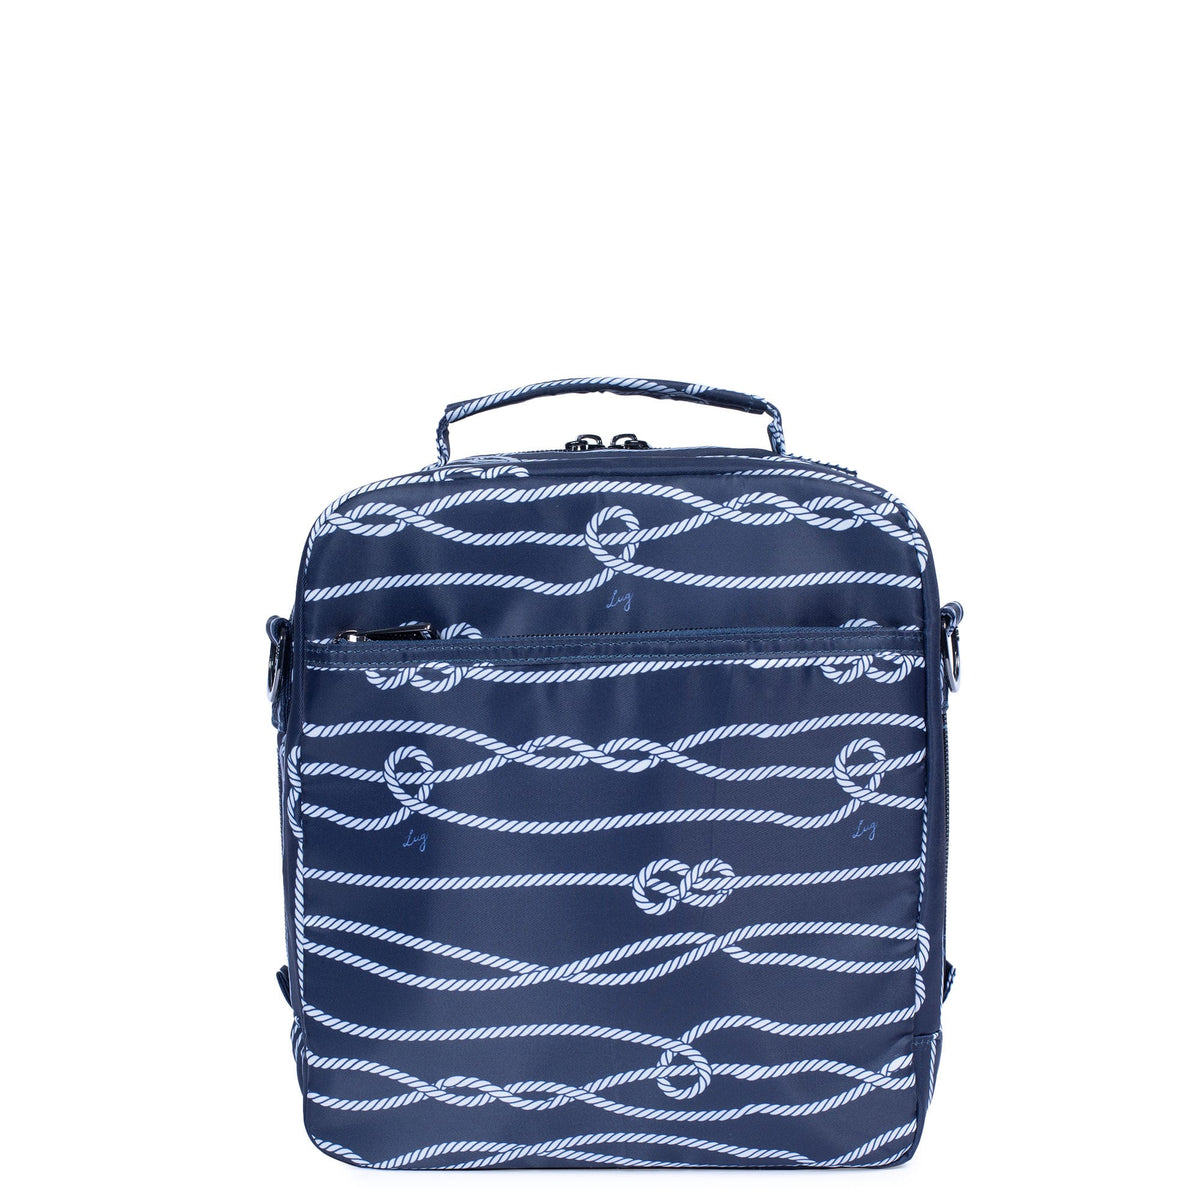 Buy Under One Sky Striped Shoulder Bag at